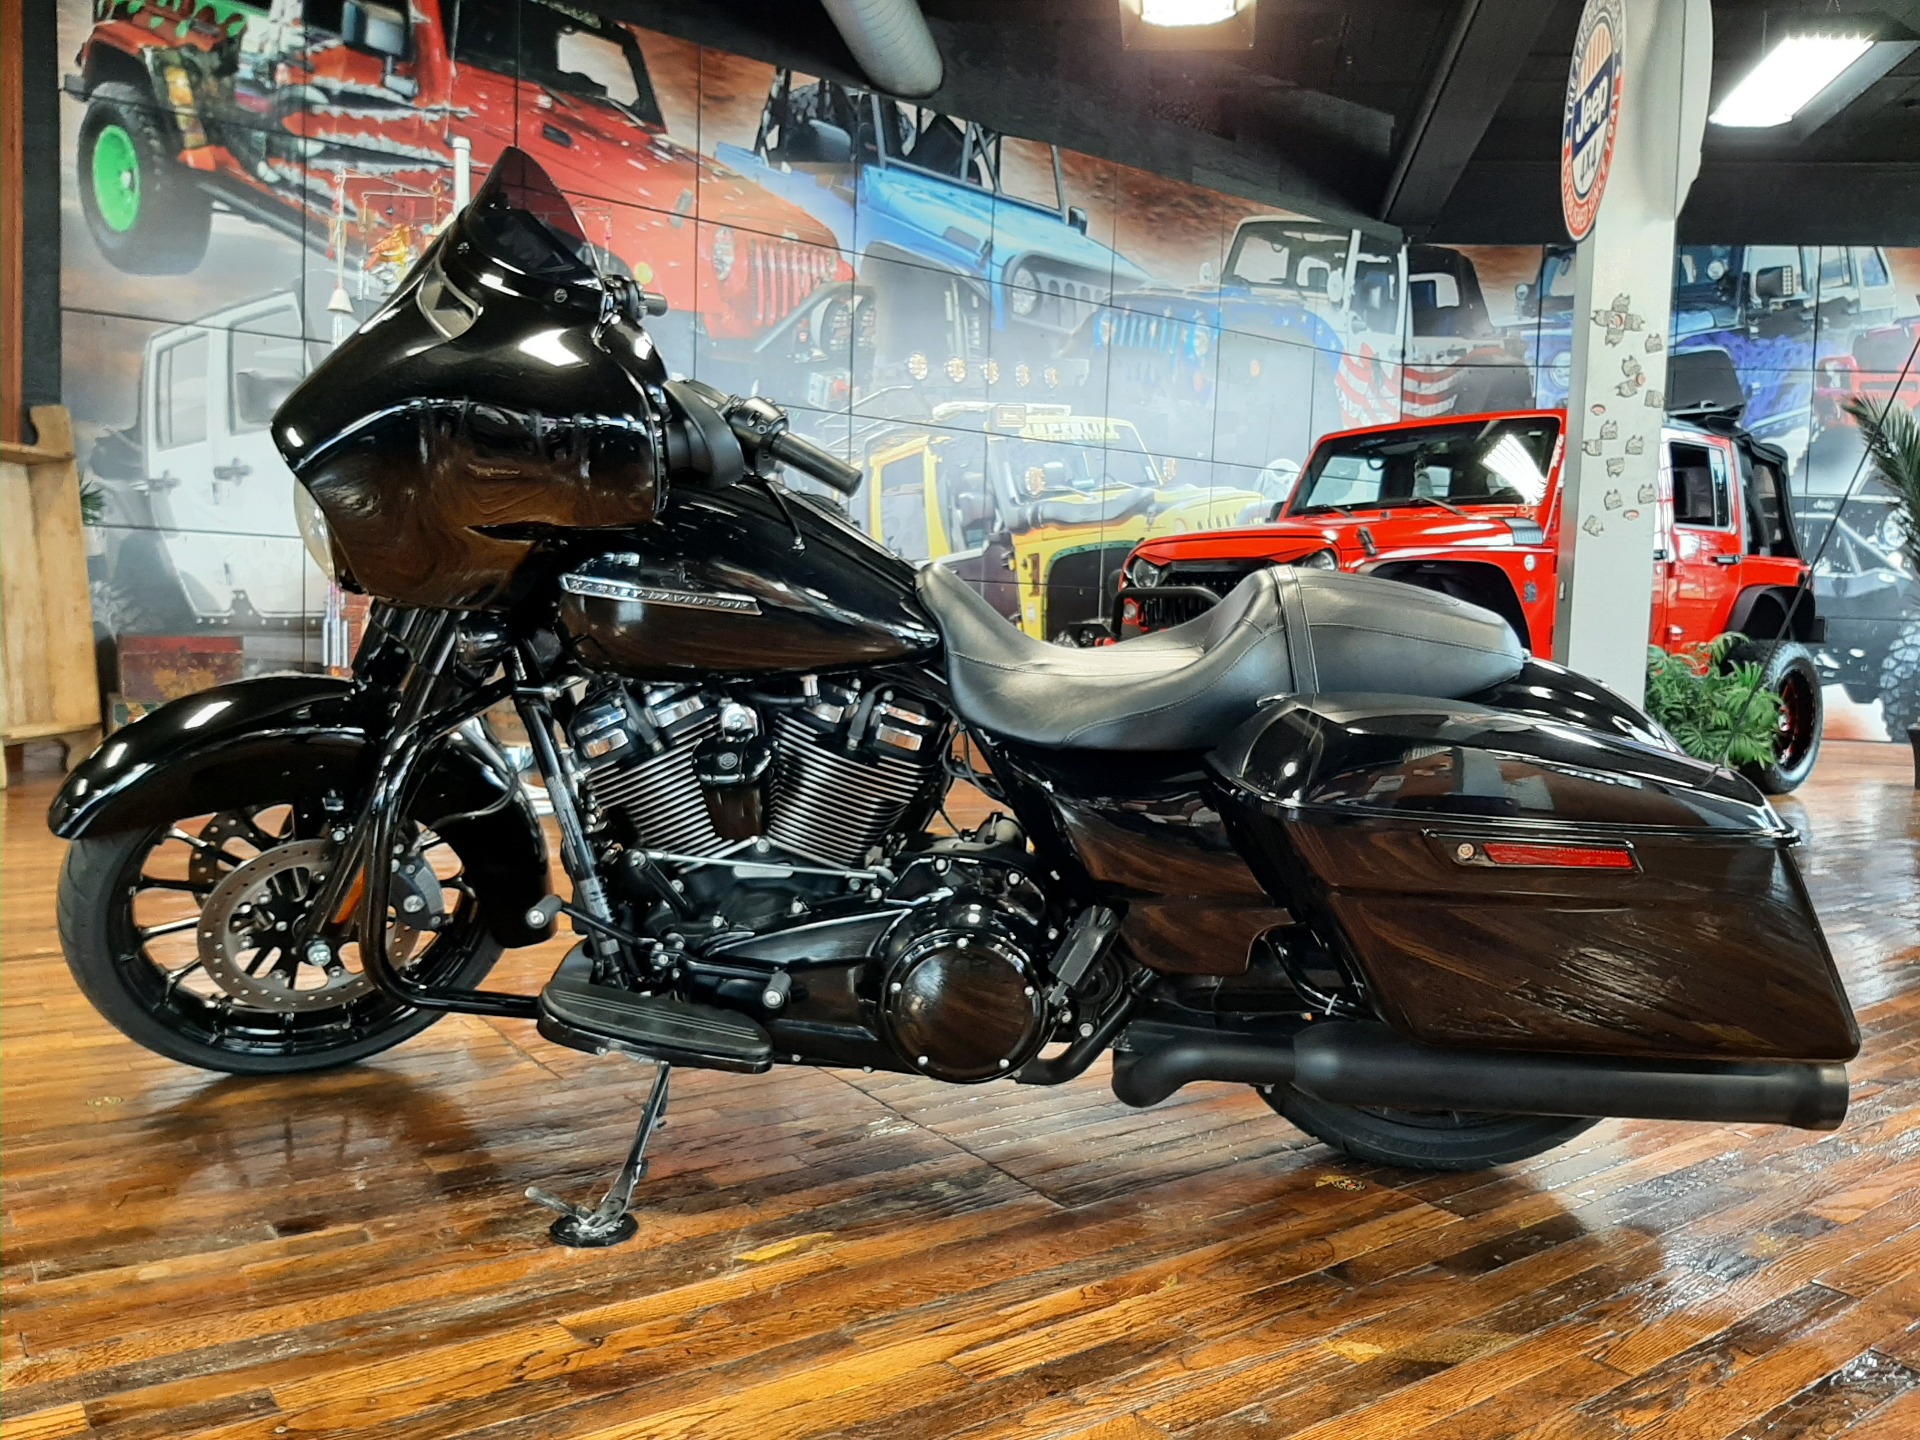 2018 Harley-Davidson Street Glide® Special in Laurel, Mississippi - Photo 5